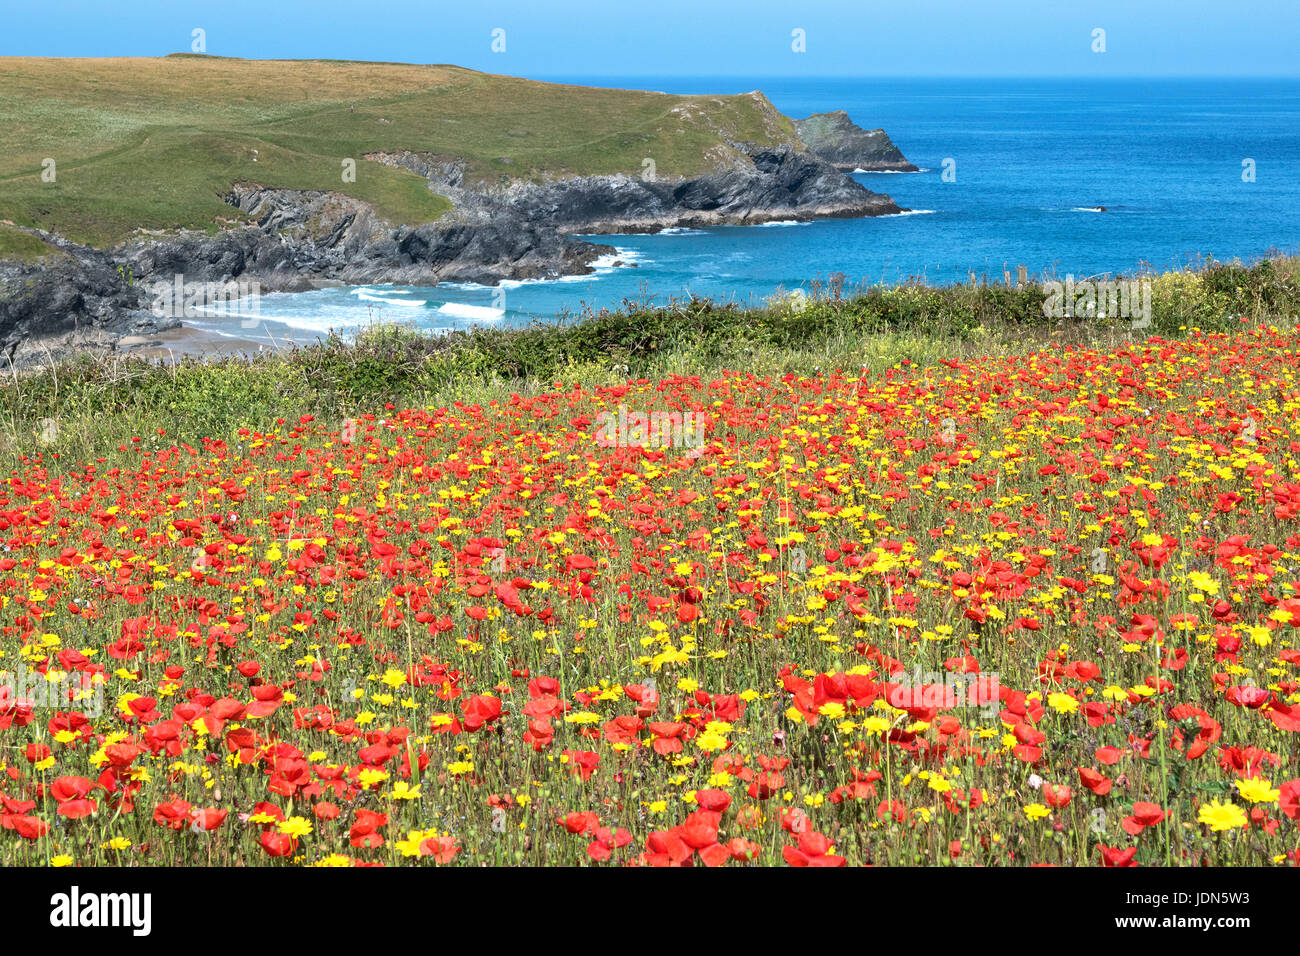 Coquelicots et fleurs de maïs, fleurs sauvages sur la côte près de porth, blague, pentire, Cornwall, Angleterre, Grande-Bretagne, Royaume-Uni. Banque D'Images